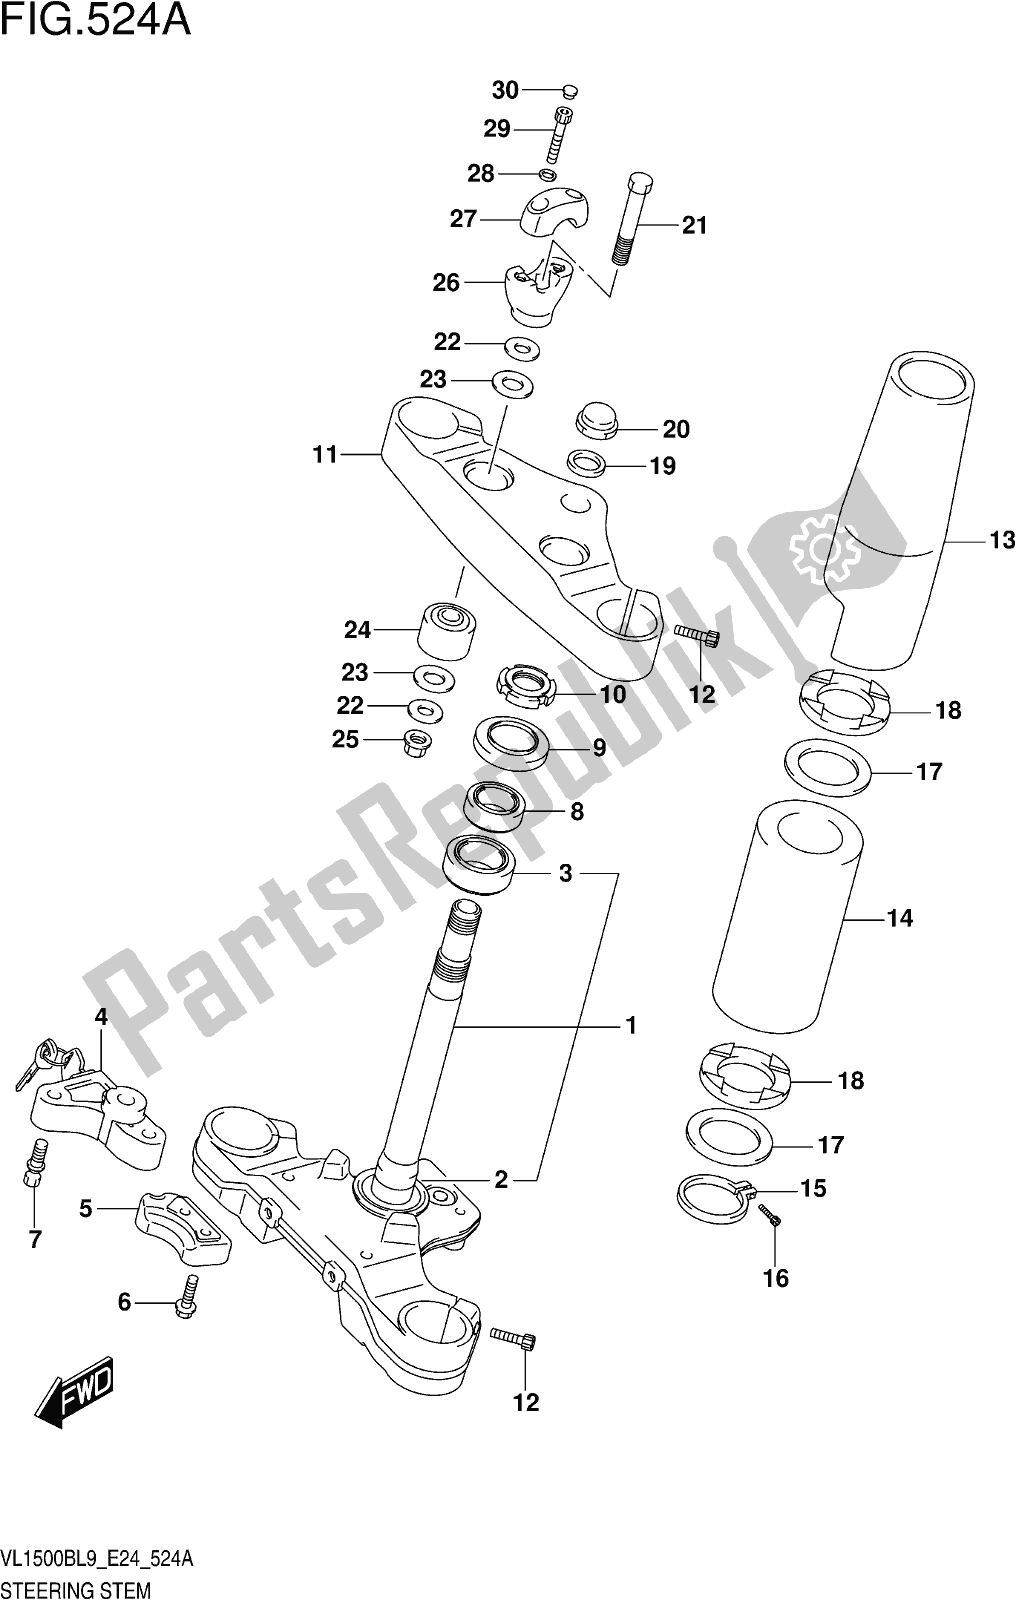 Toutes les pièces pour le Fig. 524a Steering Stem du Suzuki VL 1500B 2019